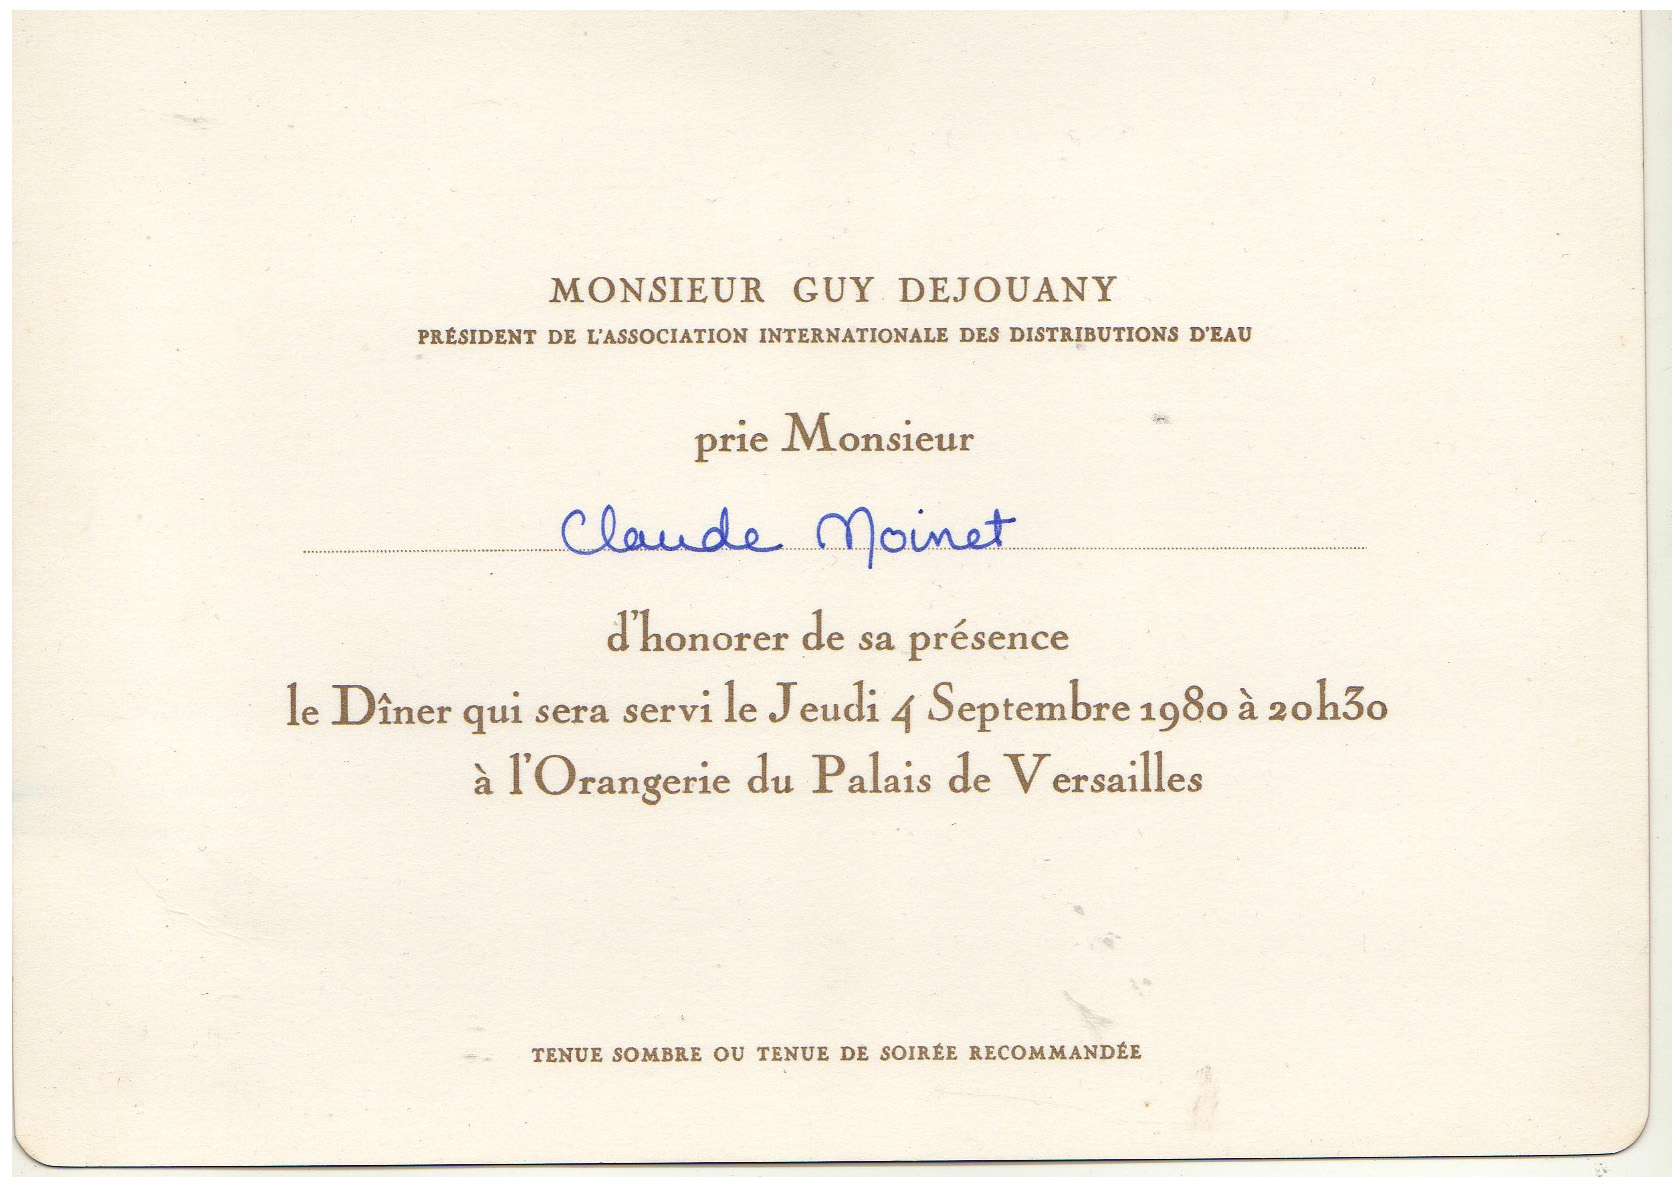 1980 invitation dejouany paris